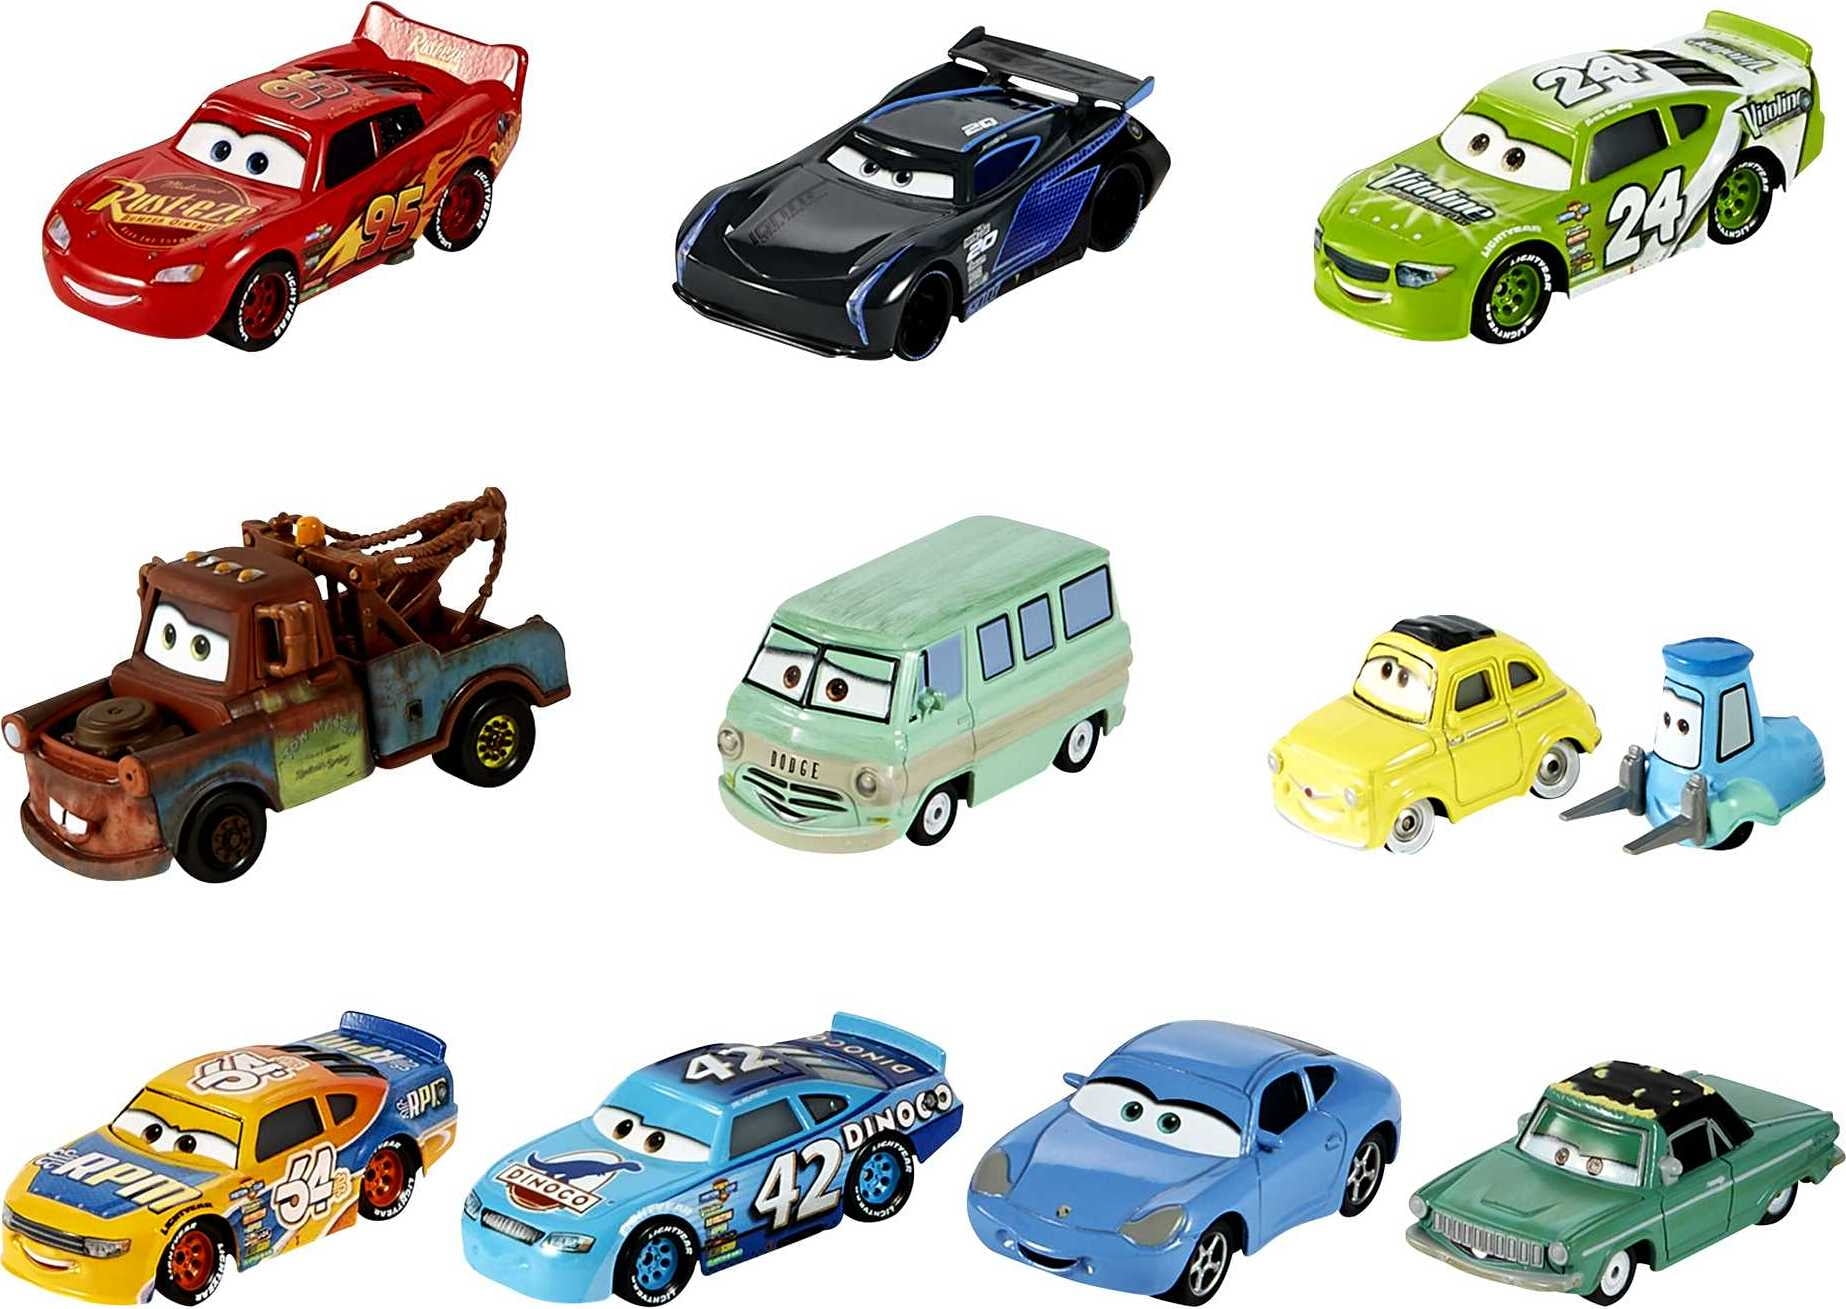 Набор машин Mattel cars Mini Racers. Тачки 1 набор гонщиков. Старые гонщики Тачки 3 Mattel. Набор гонщиков из тачек 1.